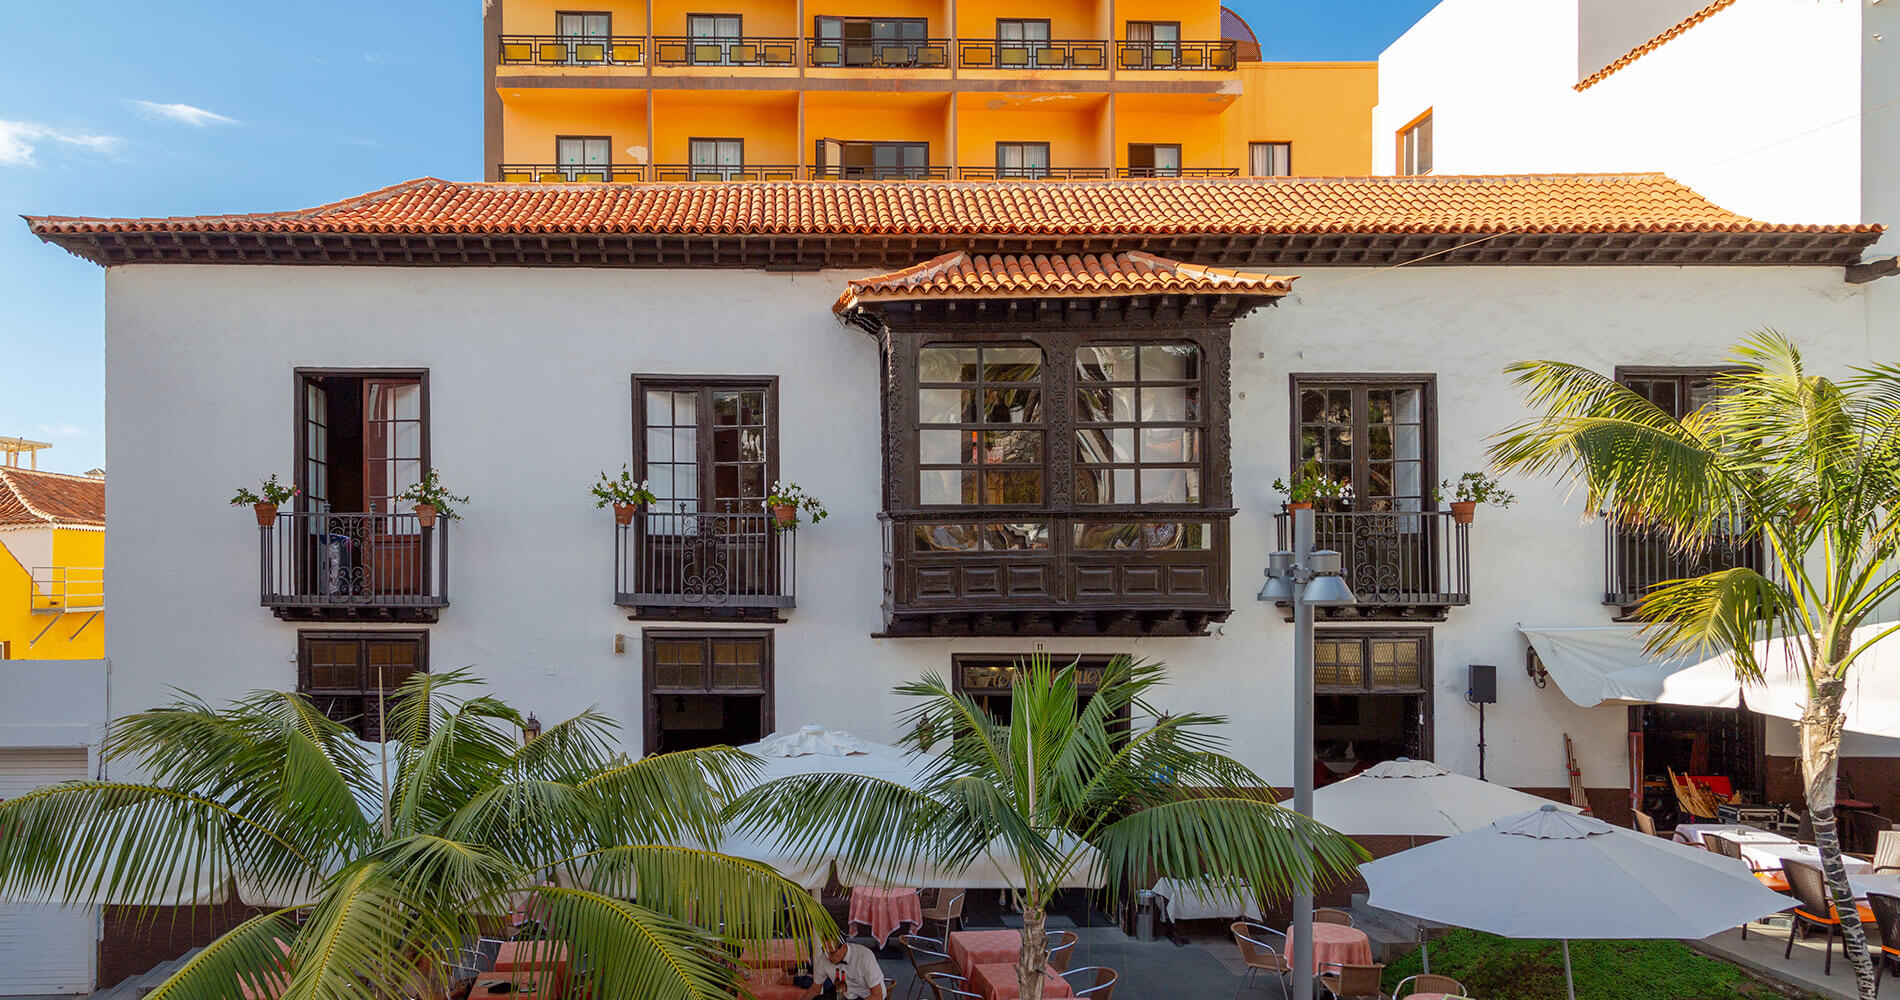 La forma insulto Óptima Hotel Marquesa | Puerto de la Cruz | Tenerife | Web oficial